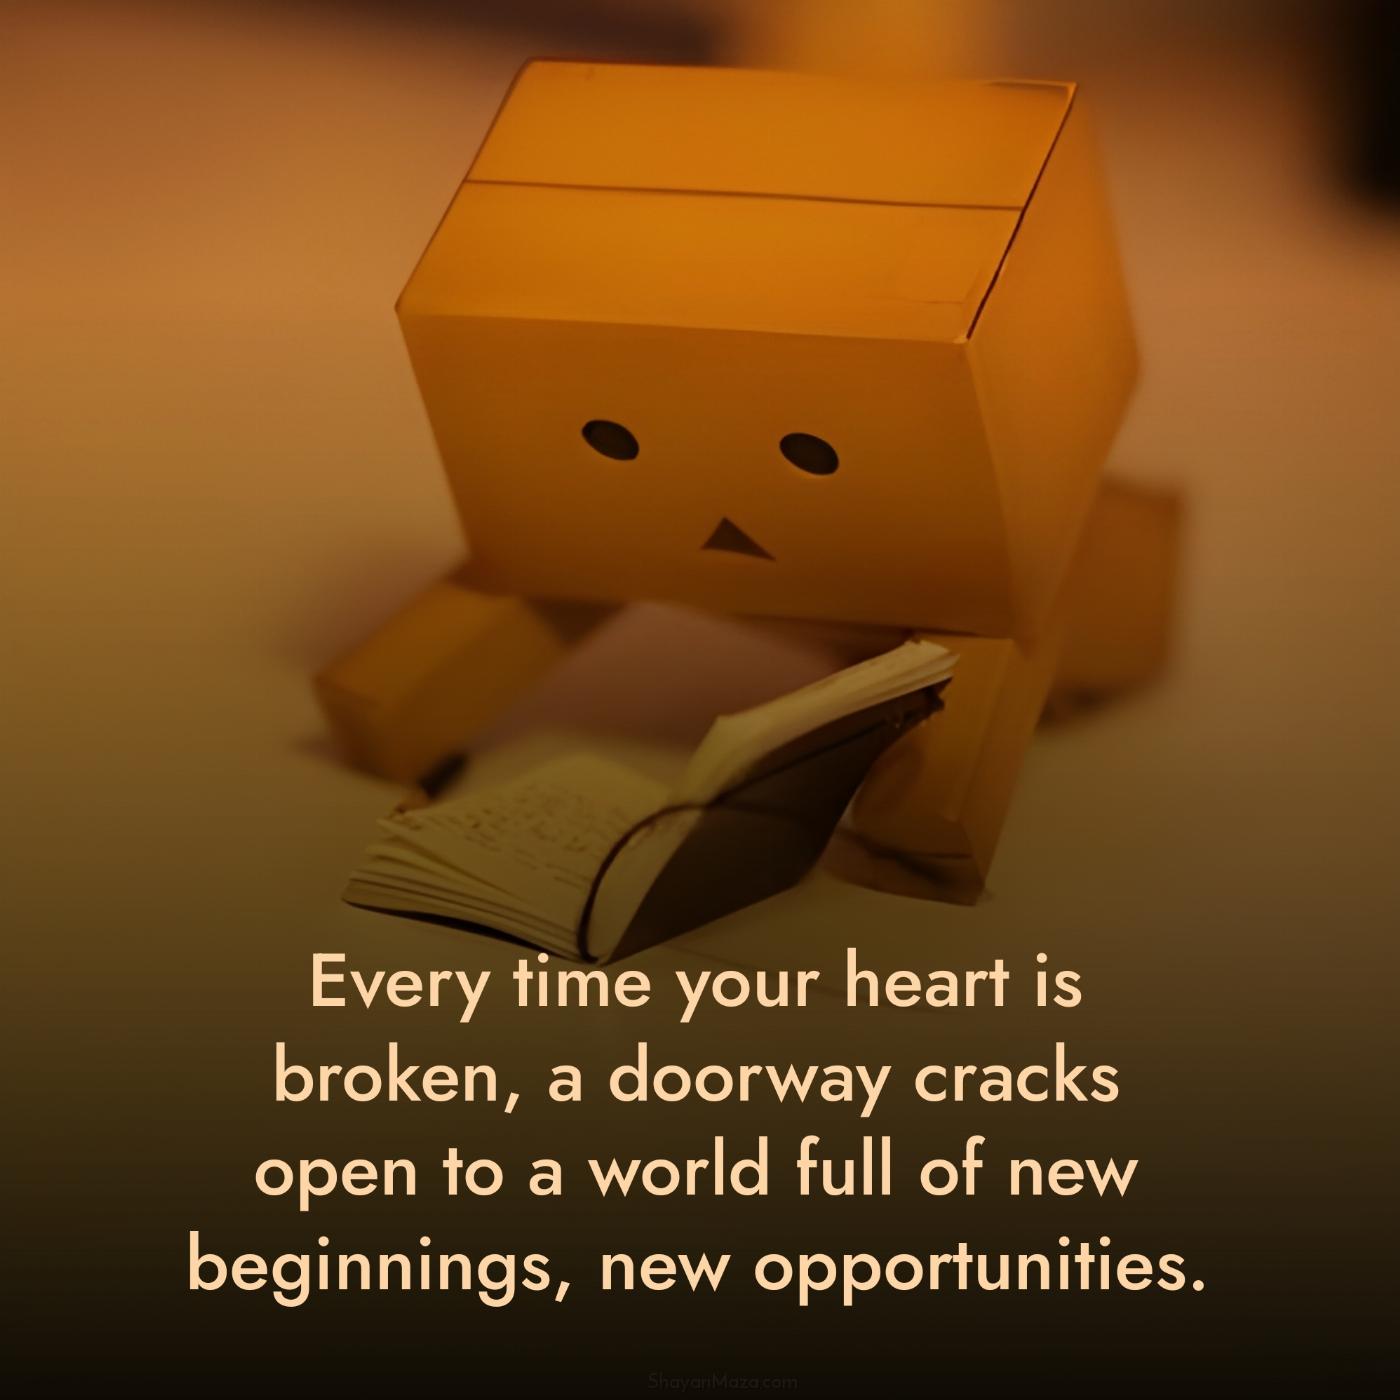 Every time your heart is broken a doorway cracks open